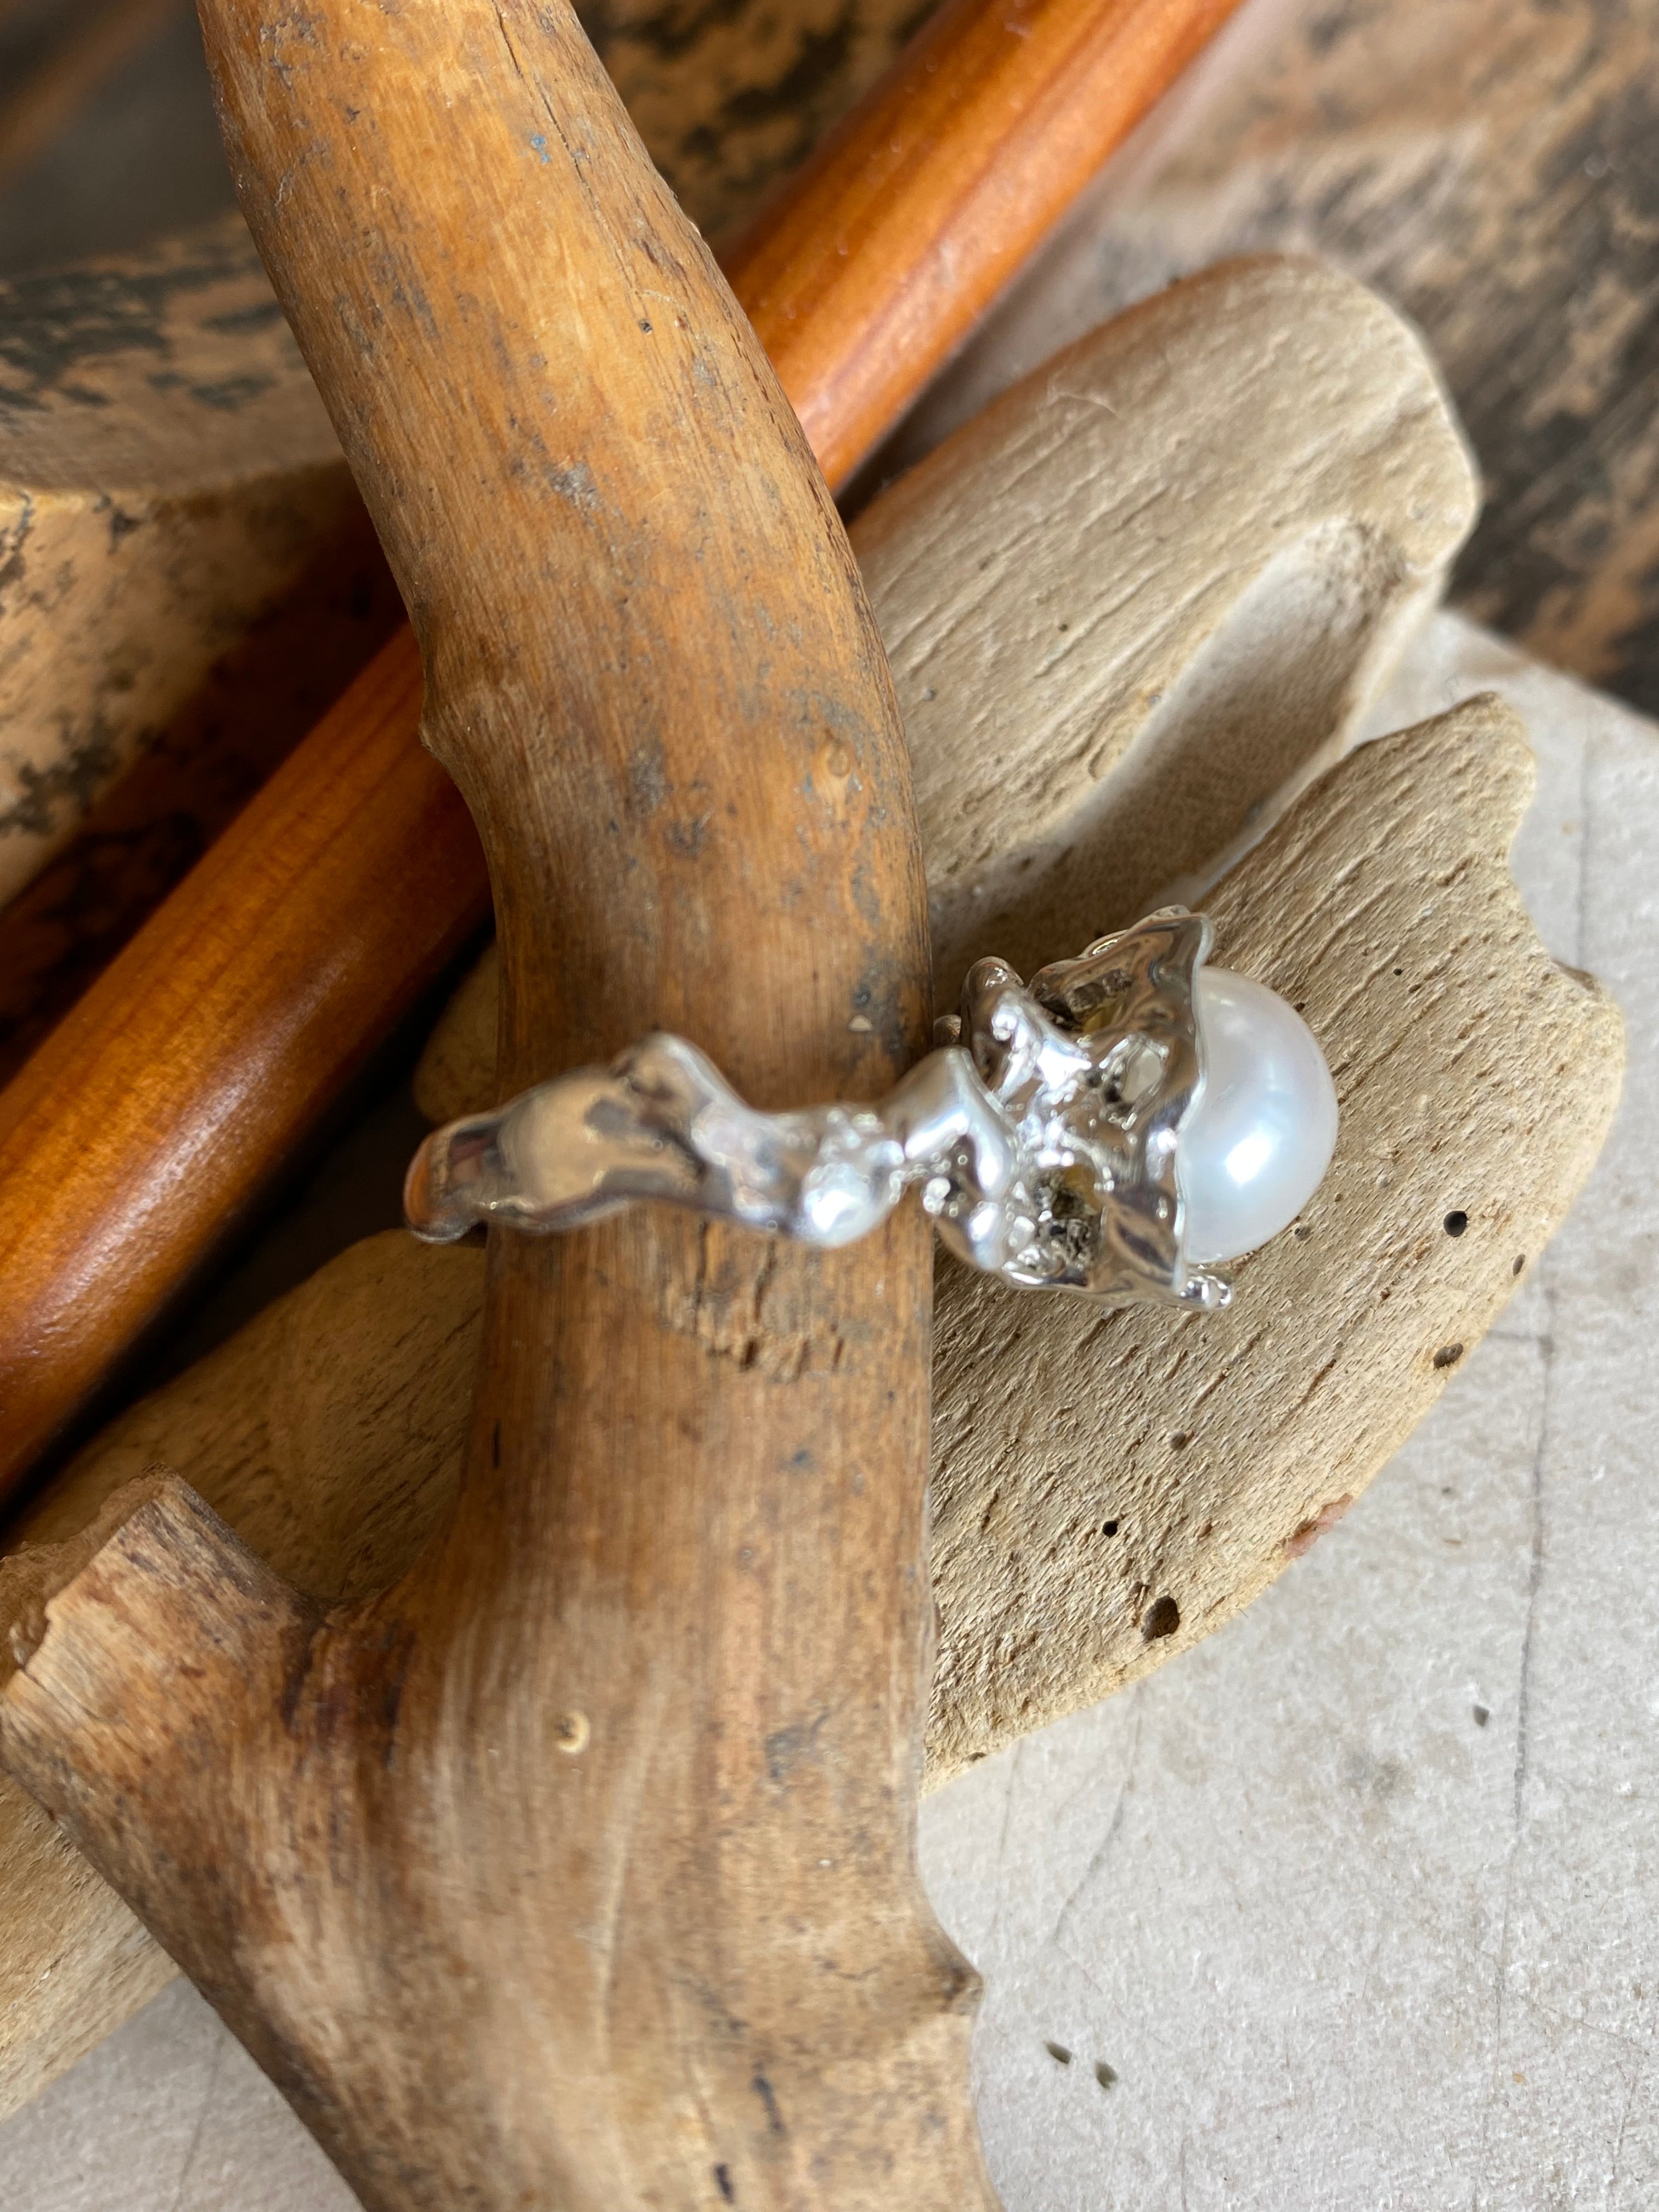 Fiorella pearl ring